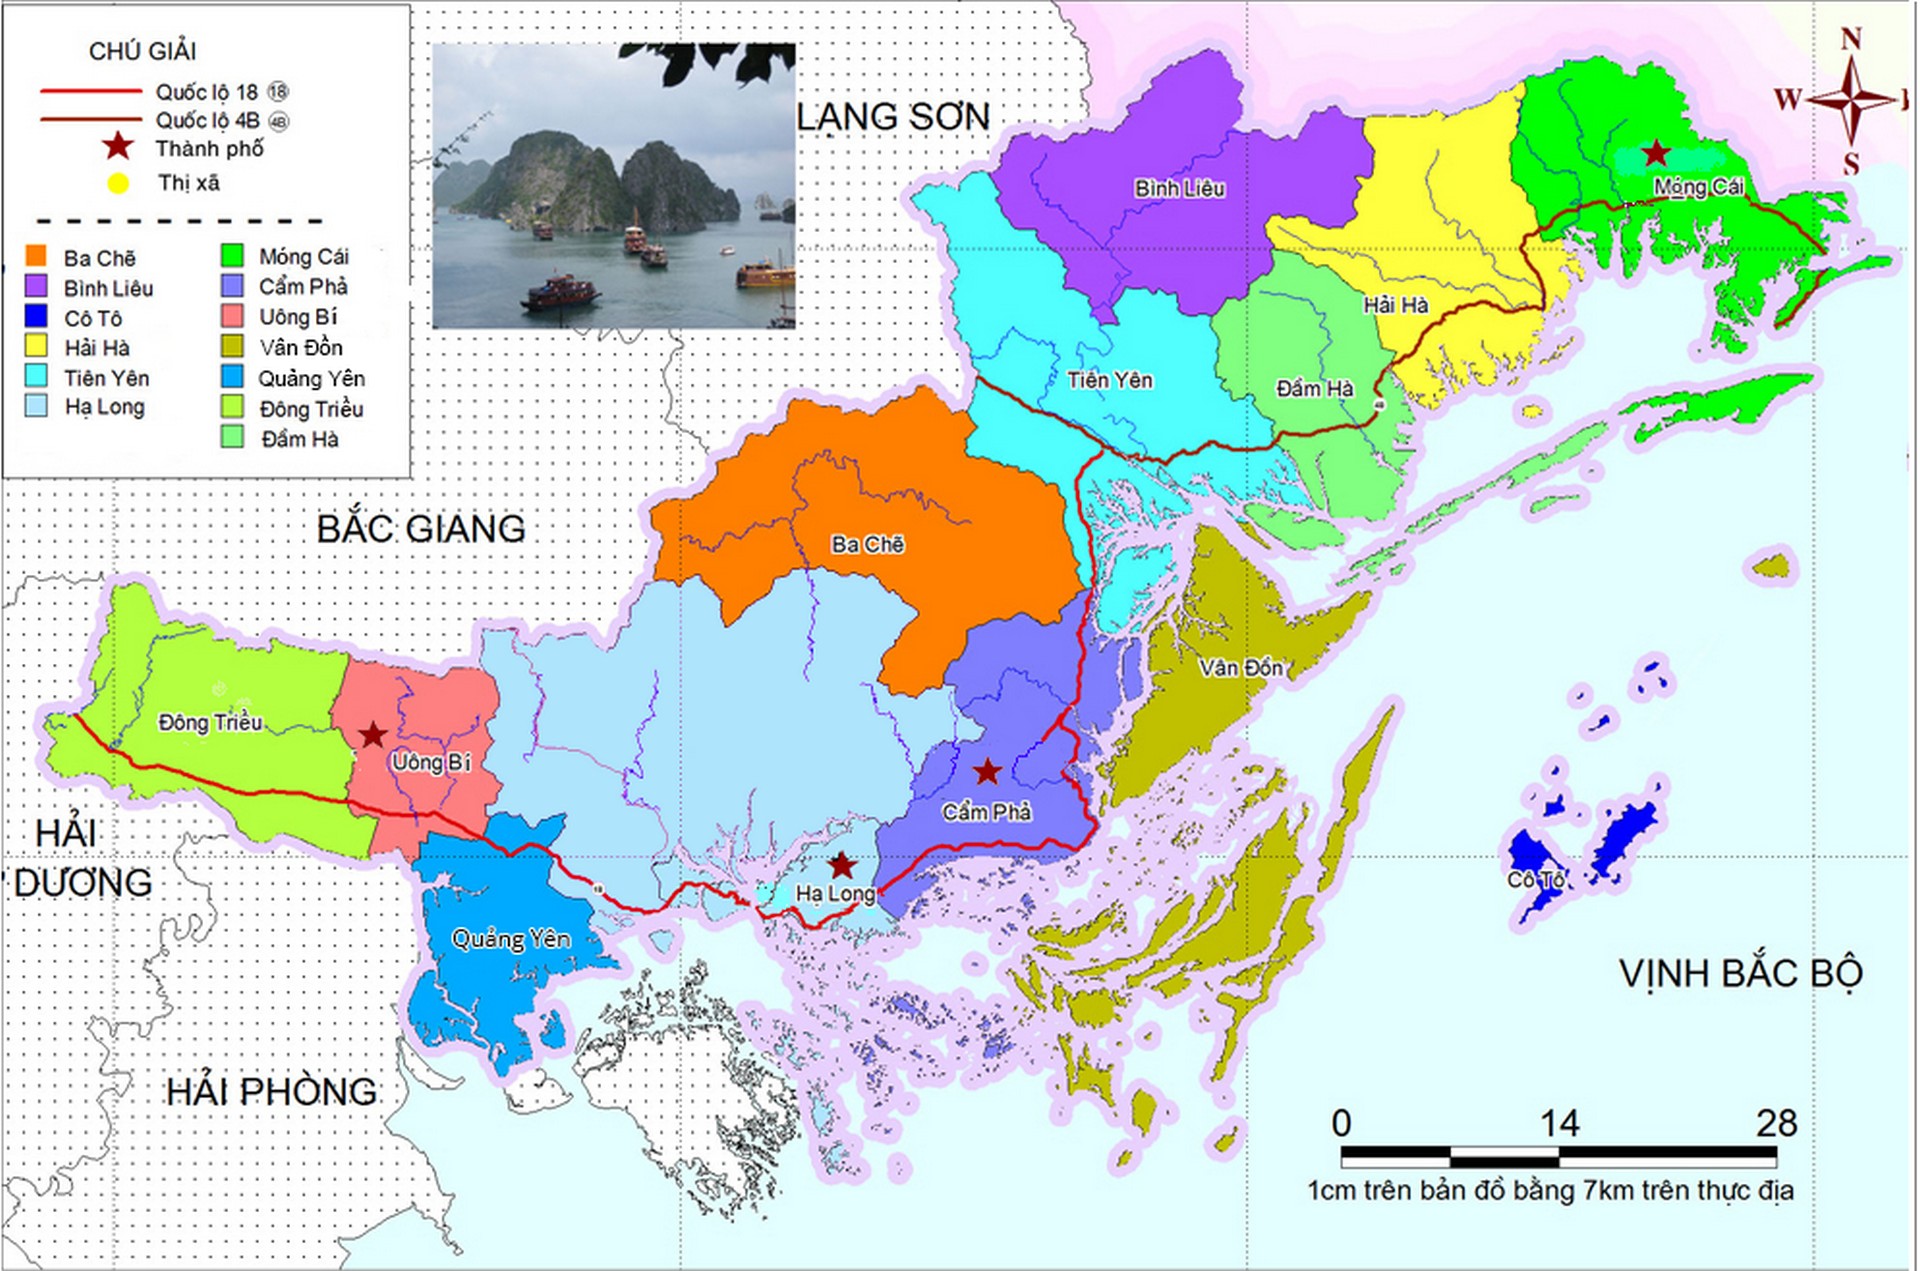 Bản đồ chi tiết Quảng Ninh đến năm 2024 sẽ cung cấp cho bạn những thông tin mới nhất về sự phát triển của tỉnh này. Quảng Ninh đang trở thành một trong những trung tâm kinh tế của miền Bắc, cùng với vịnh Hạ Long được công nhận là Di sản thiên nhiên thế giới, hãy thưởng thức những hình ảnh đẹp và tìm hiểu thêm về vùng đất này.